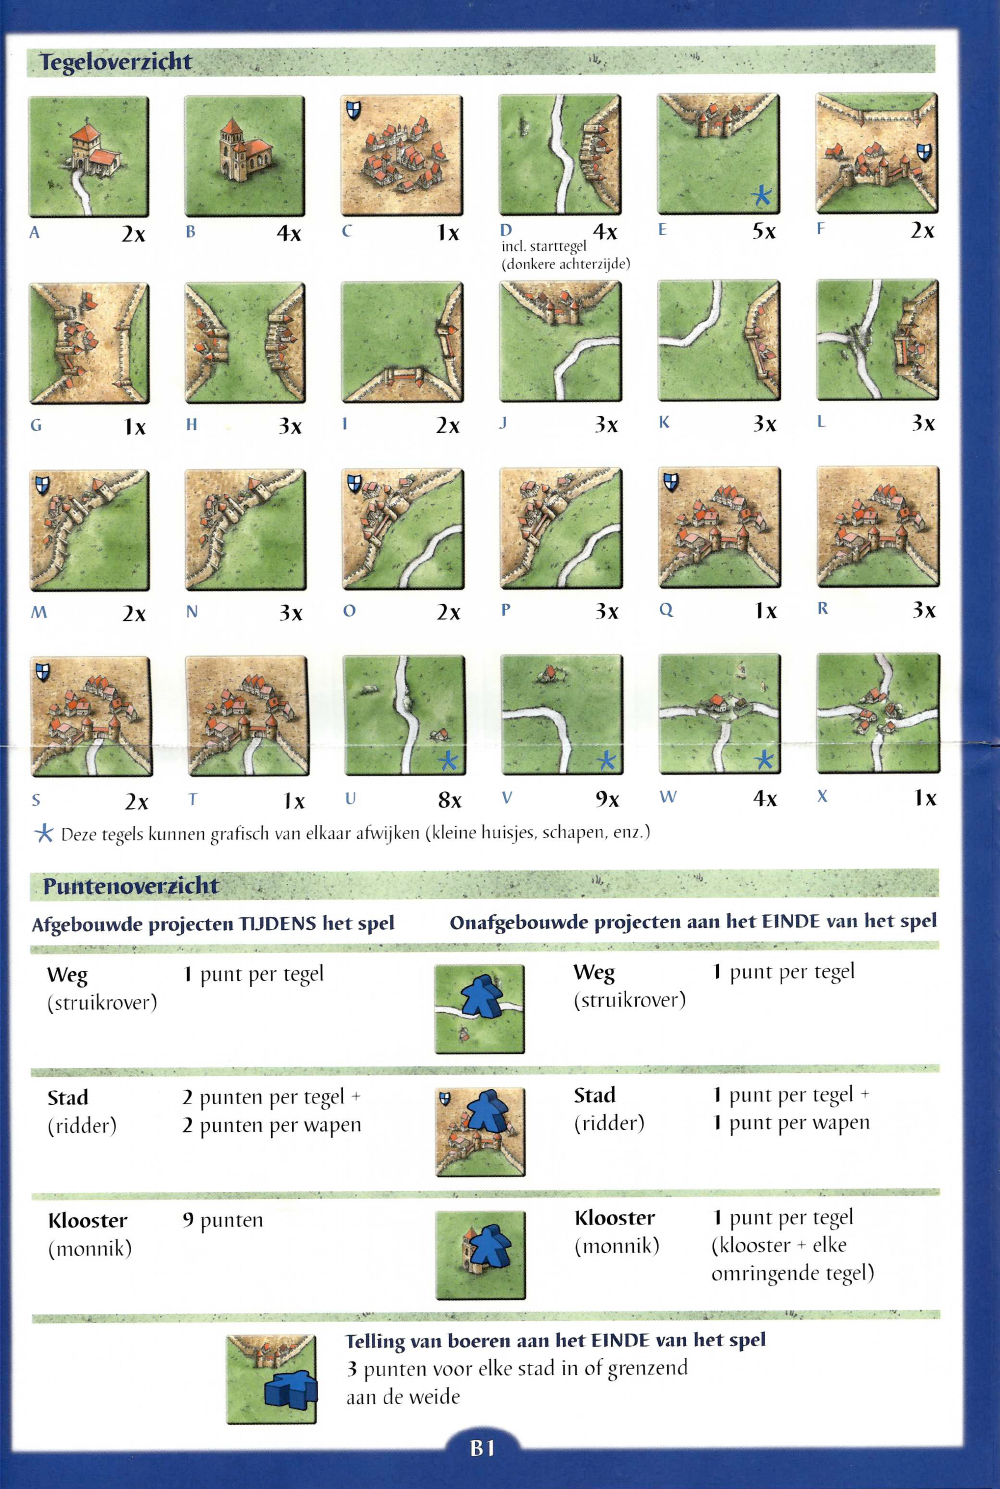 Doornen Ga terug kaas Handleiding 999 games Carcassonne Reiseditie (pagina 4 van 5) (Nederlands)